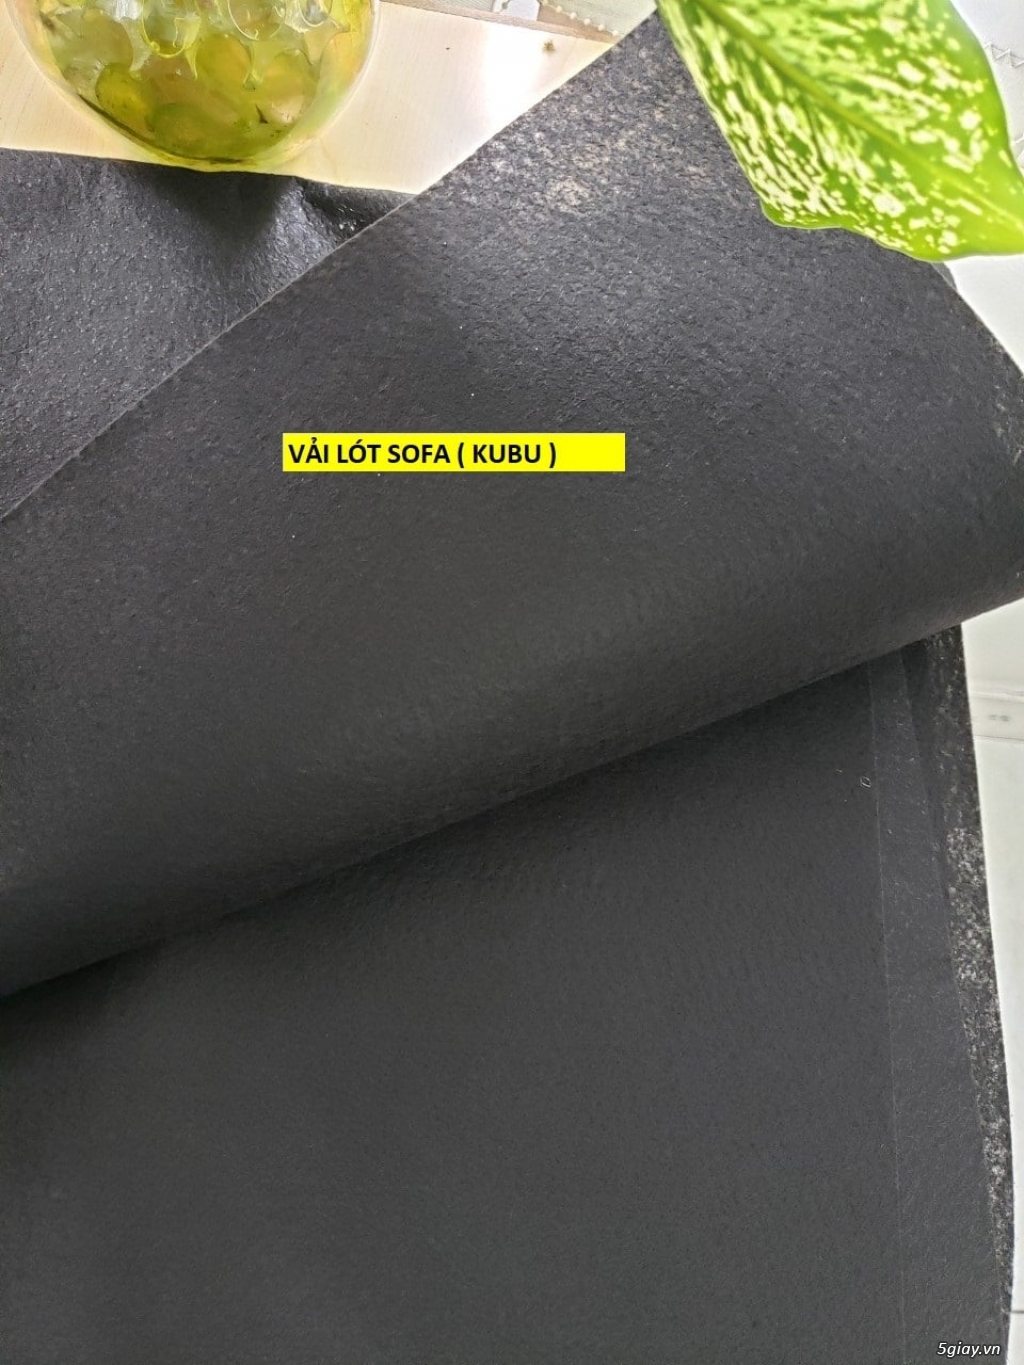 Chuyên sản xuất vải kubu làm lót vải sofa số lượng lớn ở Long An